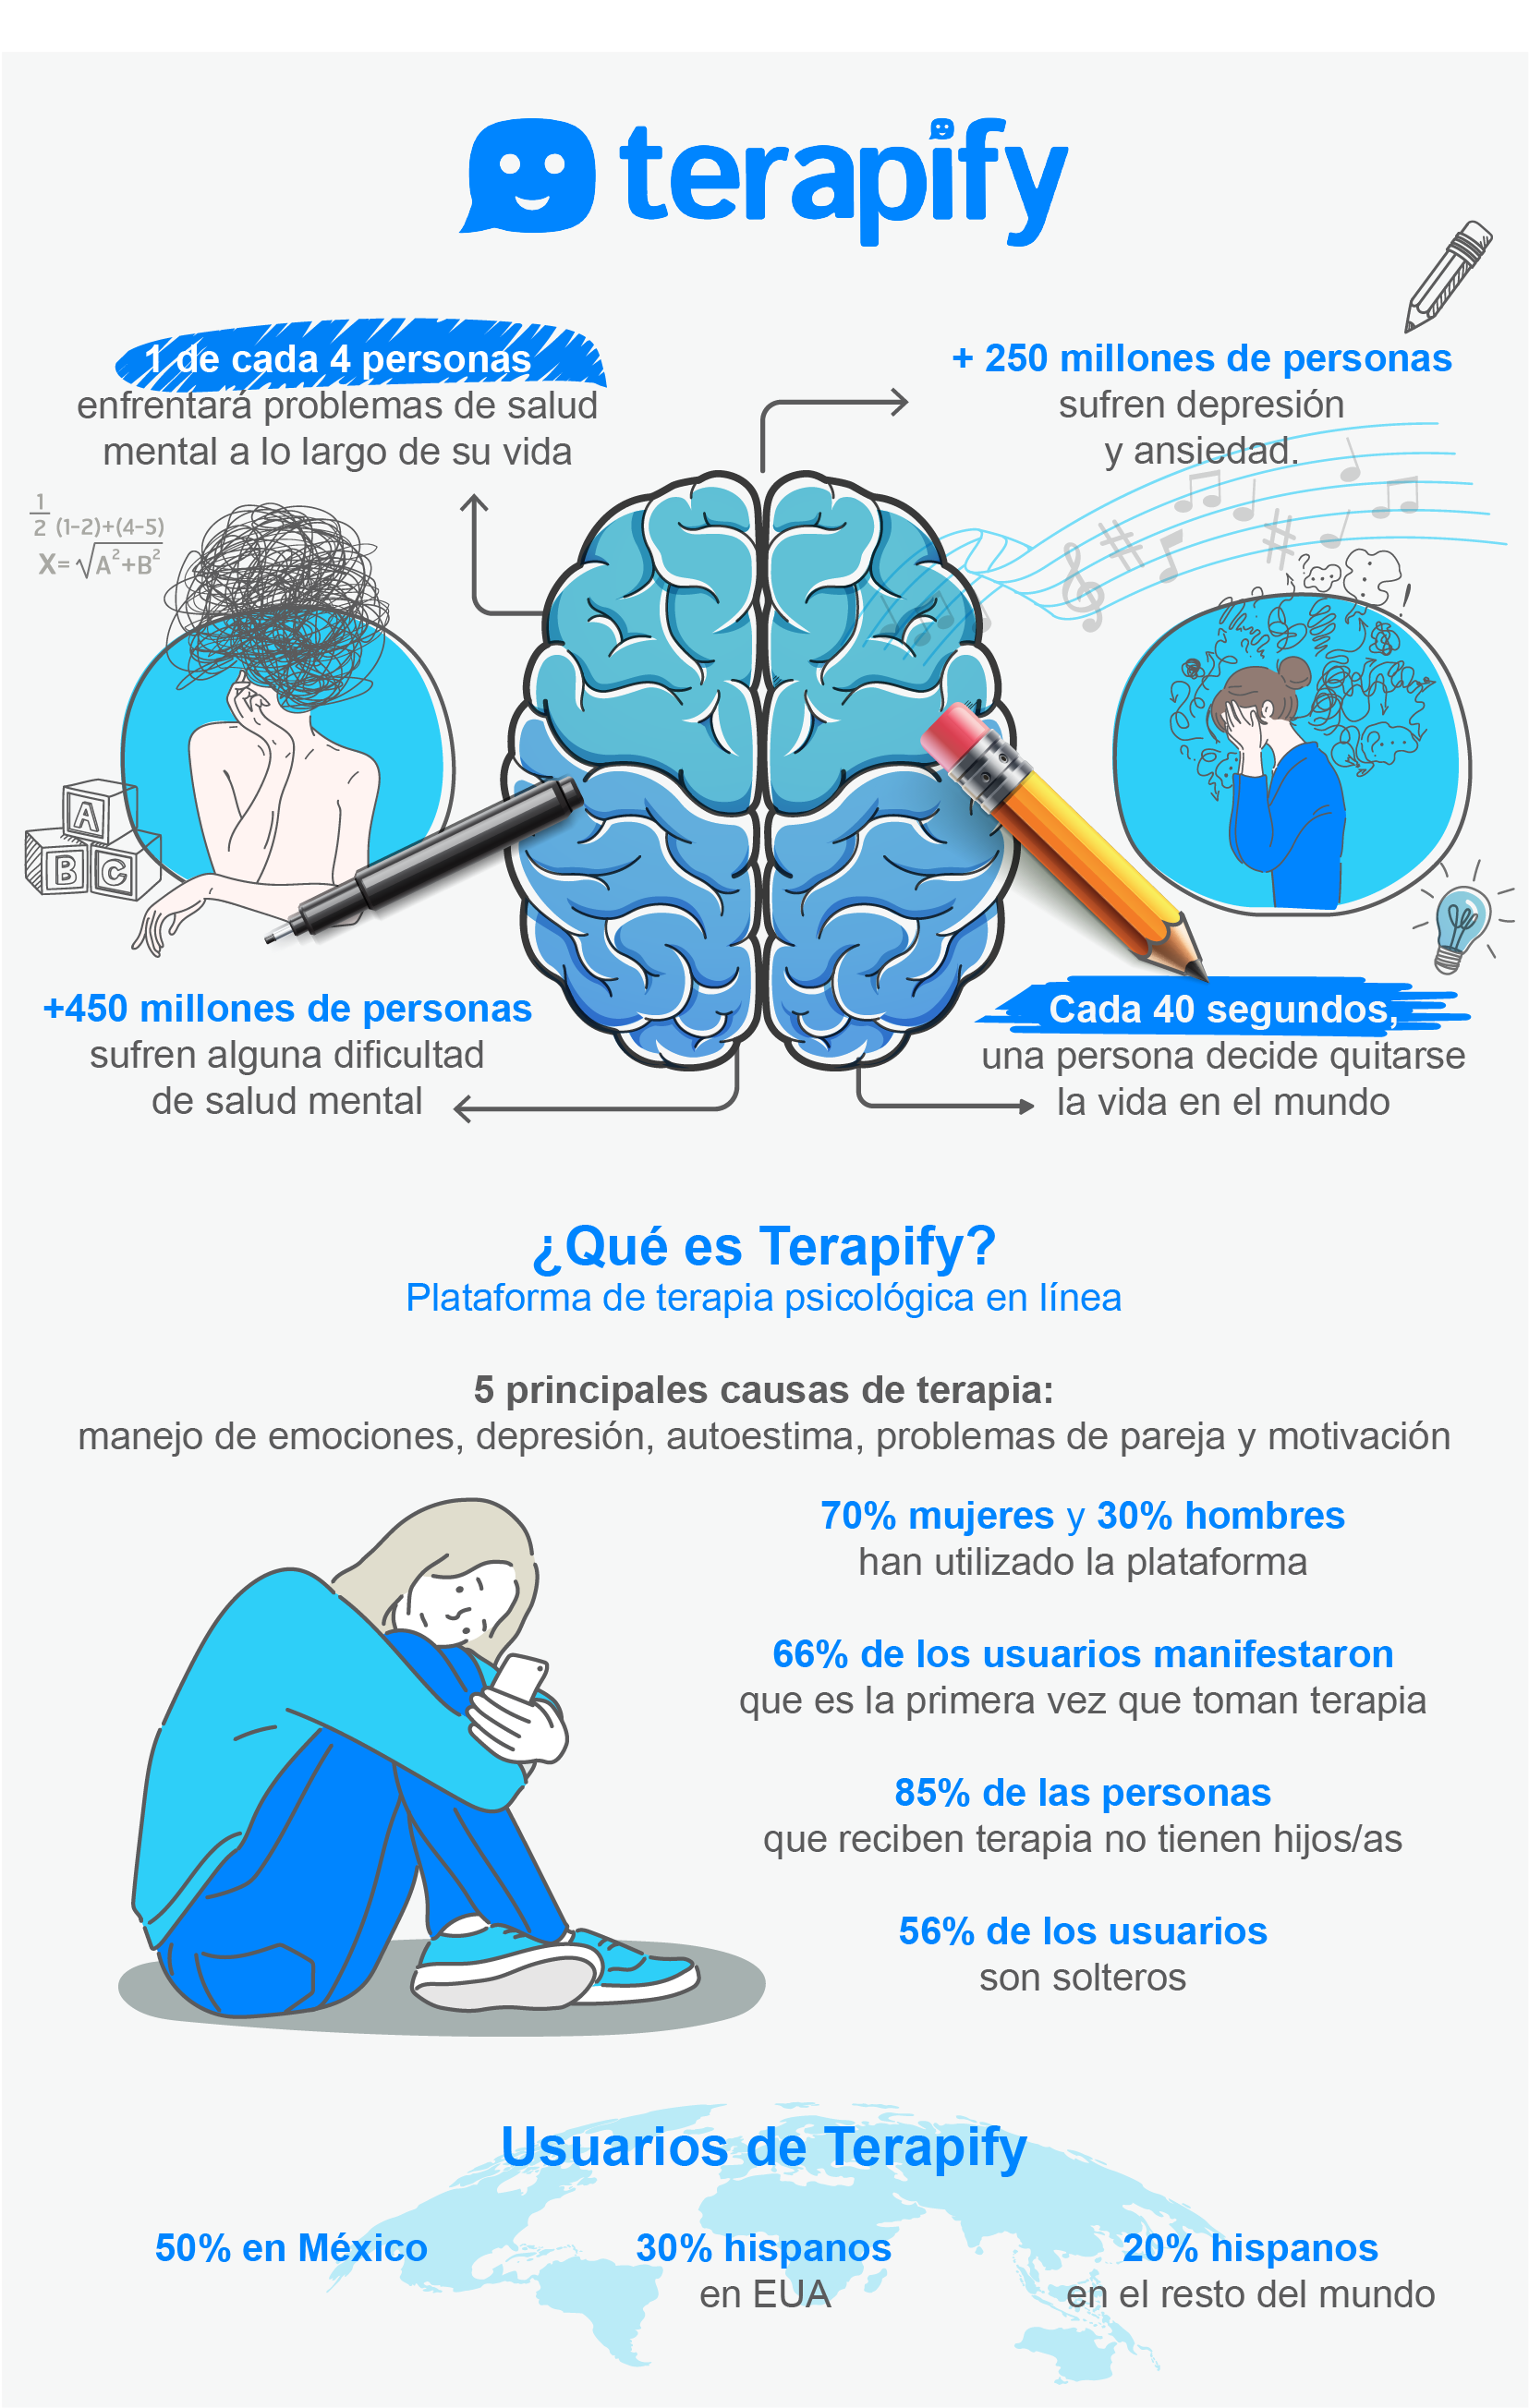 Terapify, la plataforma de atención psicológica en línea que ha ayudado a miles de mexicanos a cuidar su salud mental